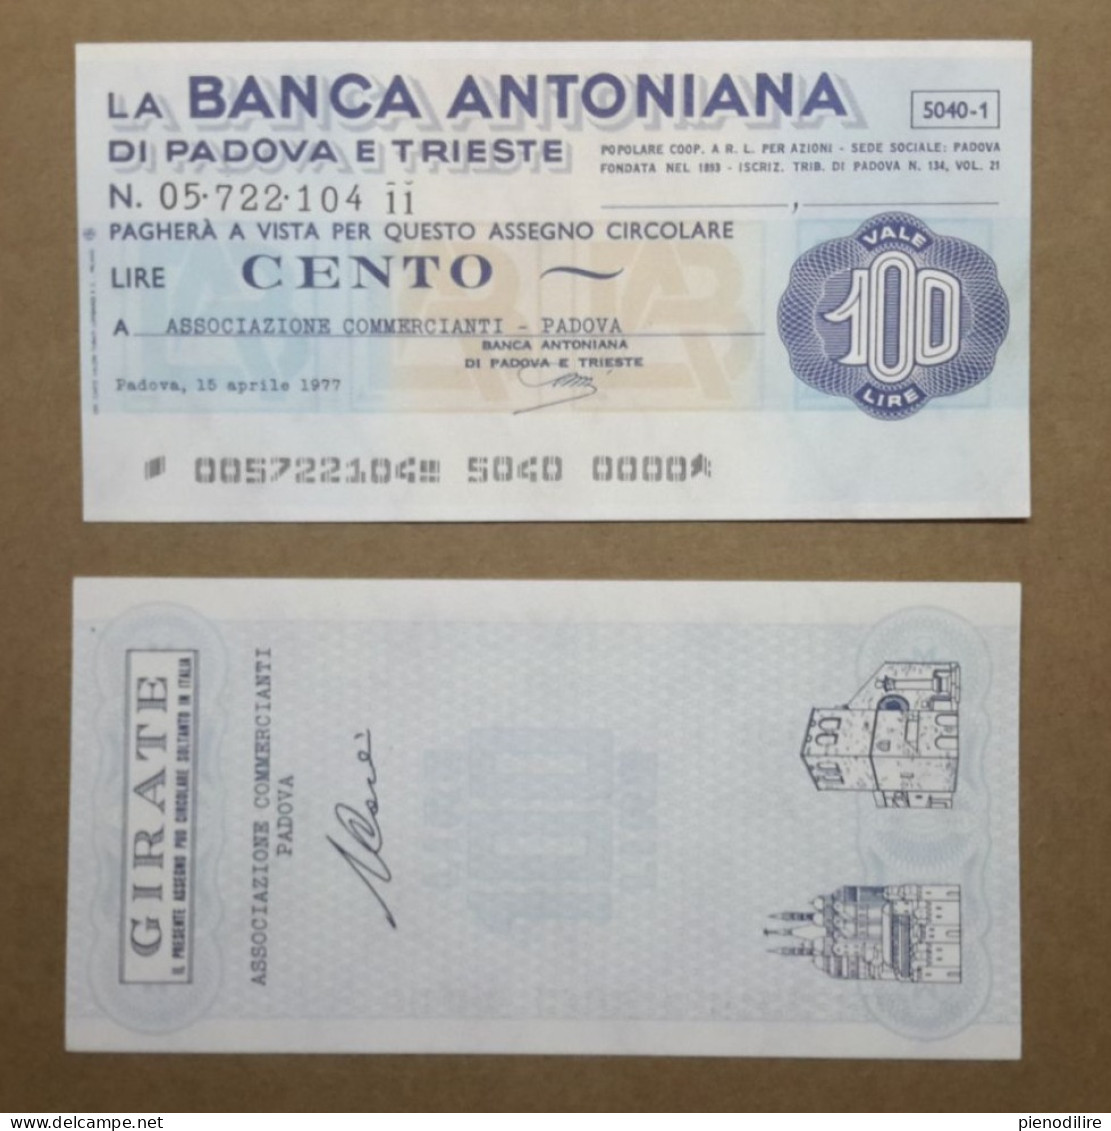 BANCA ANTONIANA DI PADOVA E TRIESTE, 100 Lire 15.04.1977 ASSOCIAZIONE COMMERCIANTI PADOVA (A1.68) - [10] Checks And Mini-checks